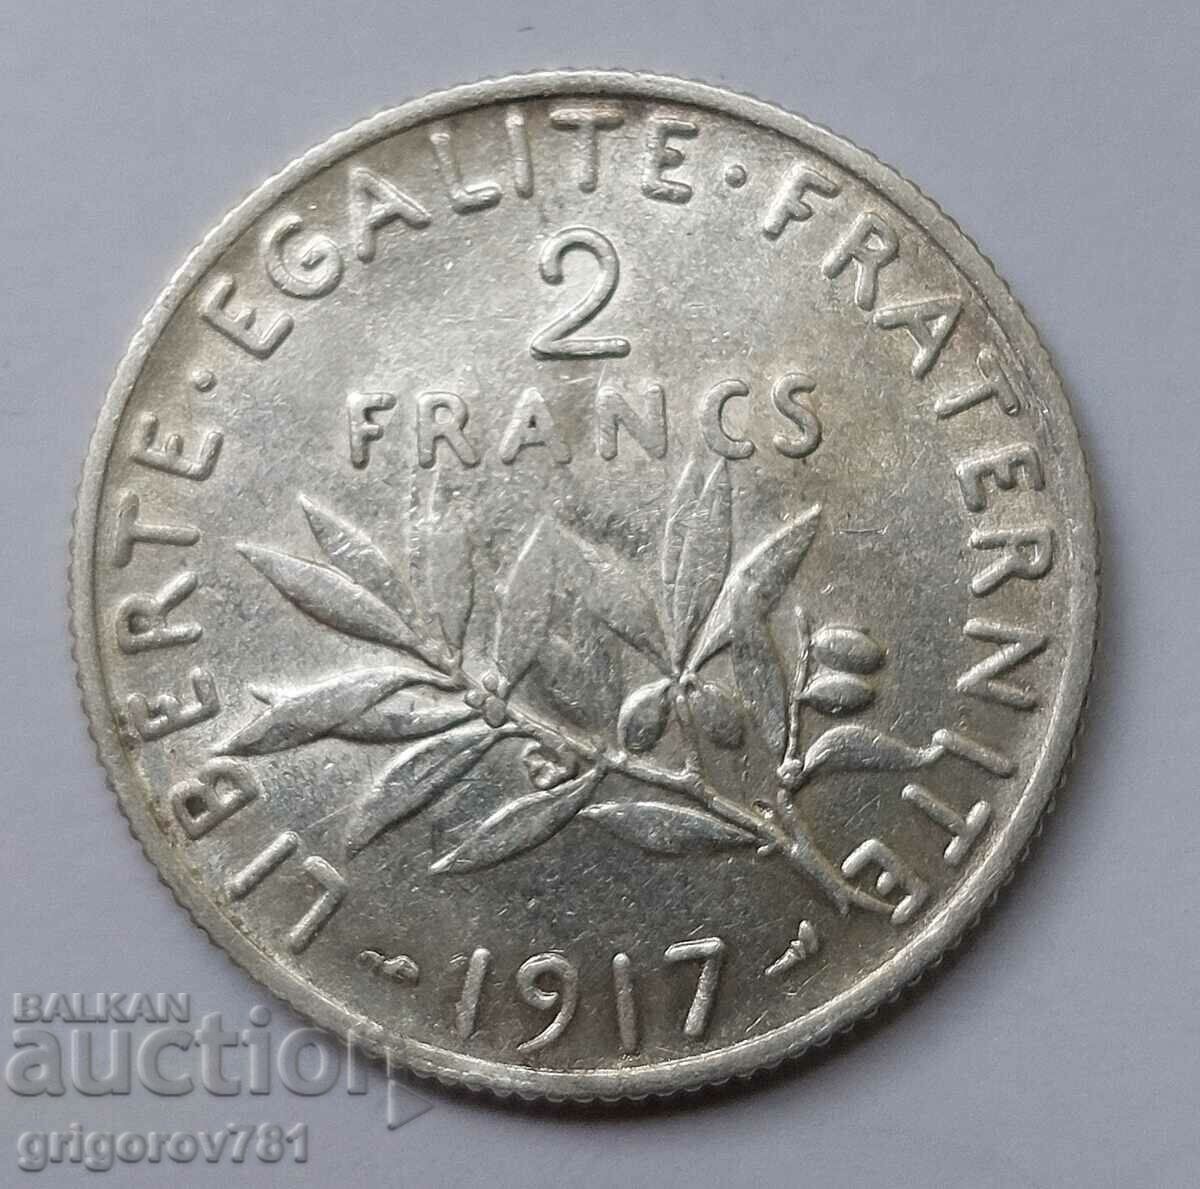 2 Franci Argint Franta 1917 - Moneda de argint #46